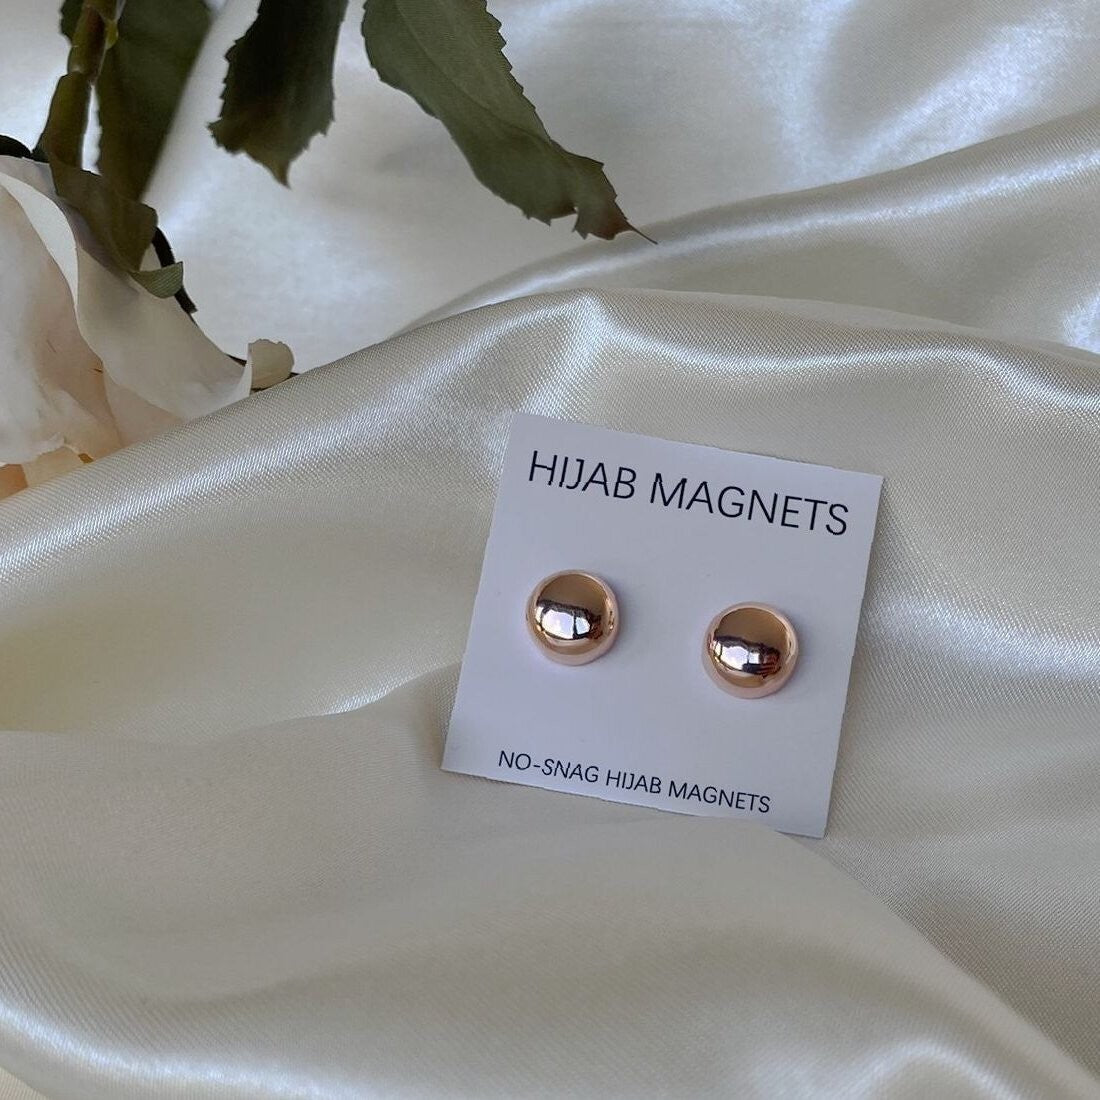 Hijab magneet 